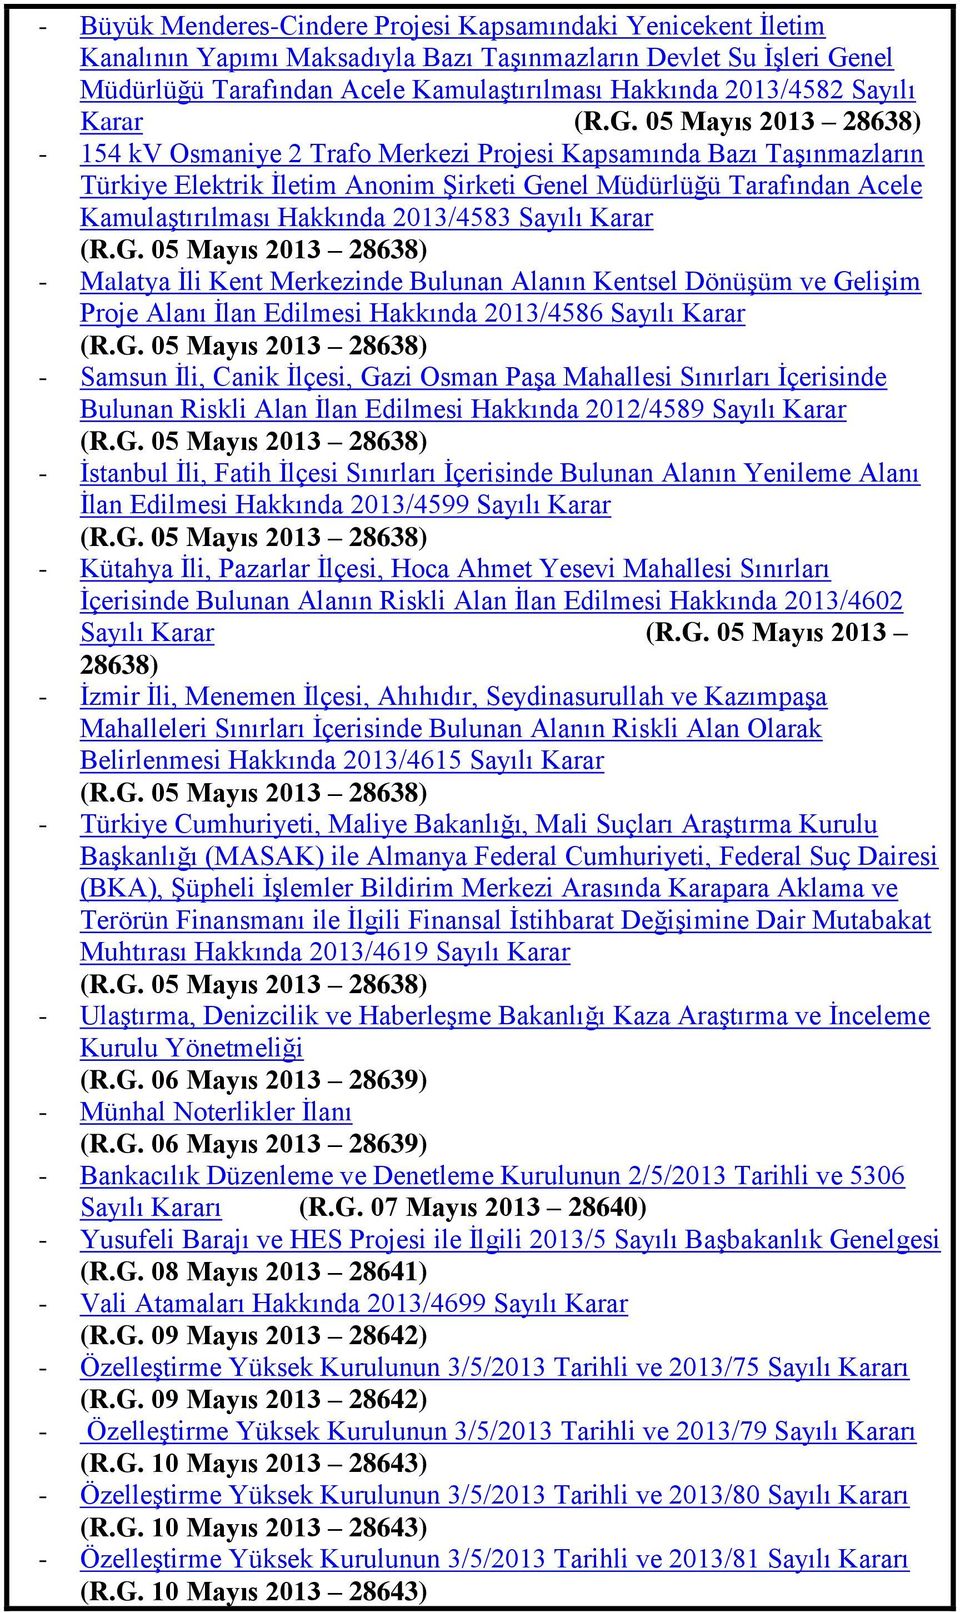 05 Mayıs 2013 28638) - 154 kv Osmaniye 2 Trafo Merkezi Projesi Kapsamında Bazı TaĢınmazların Türkiye Elektrik Ġletim Anonim ġirketi Genel Müdürlüğü Tarafından Acele KamulaĢtırılması Hakkında